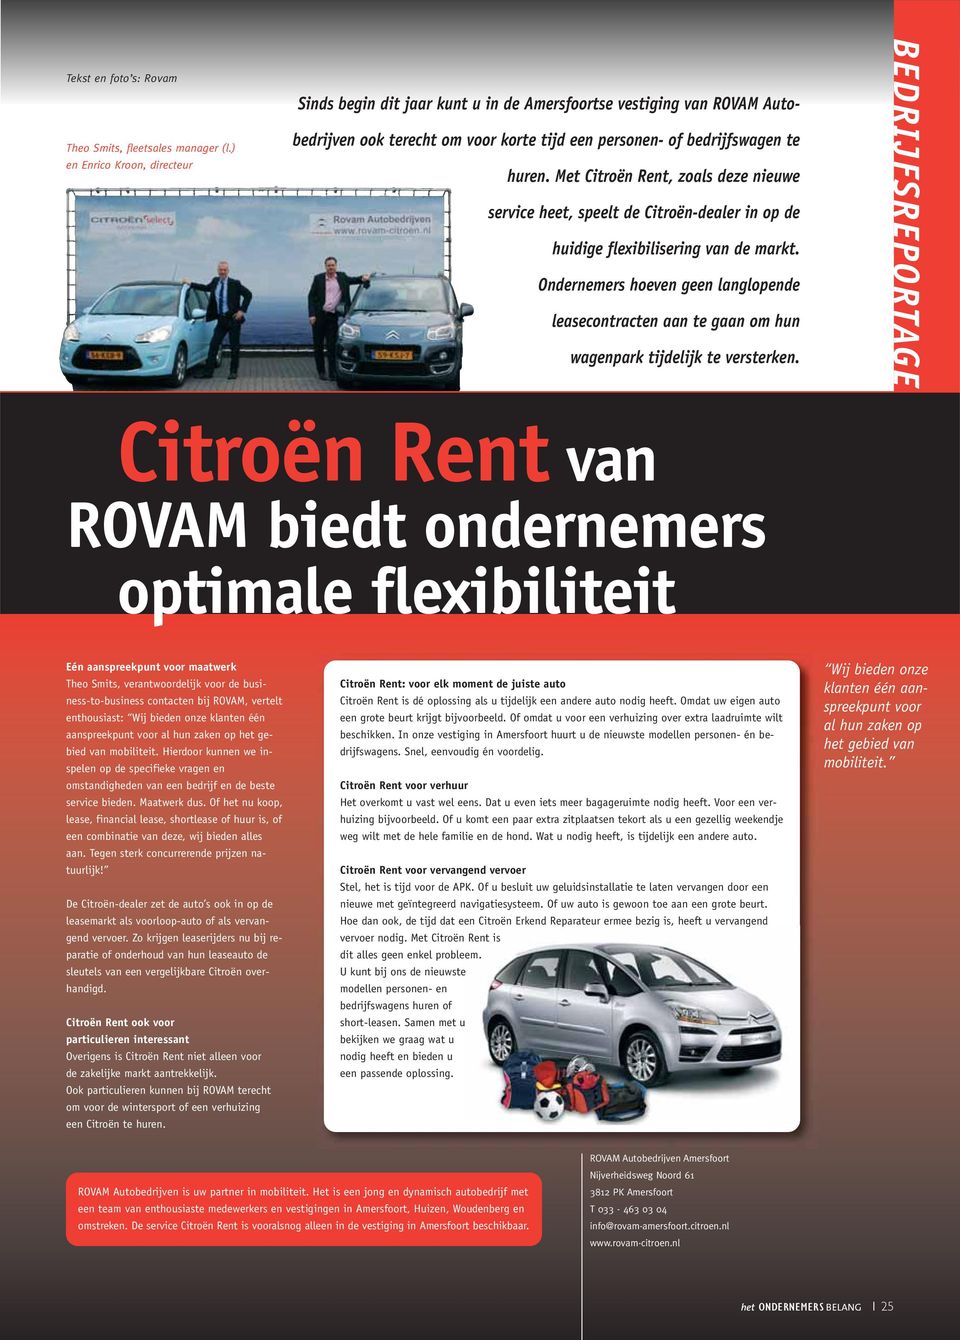 Met Citroën Rent, zoals deze nieuwe service heet, speelt de Citroën-dealer in op de huidige flexibilisering van de markt.